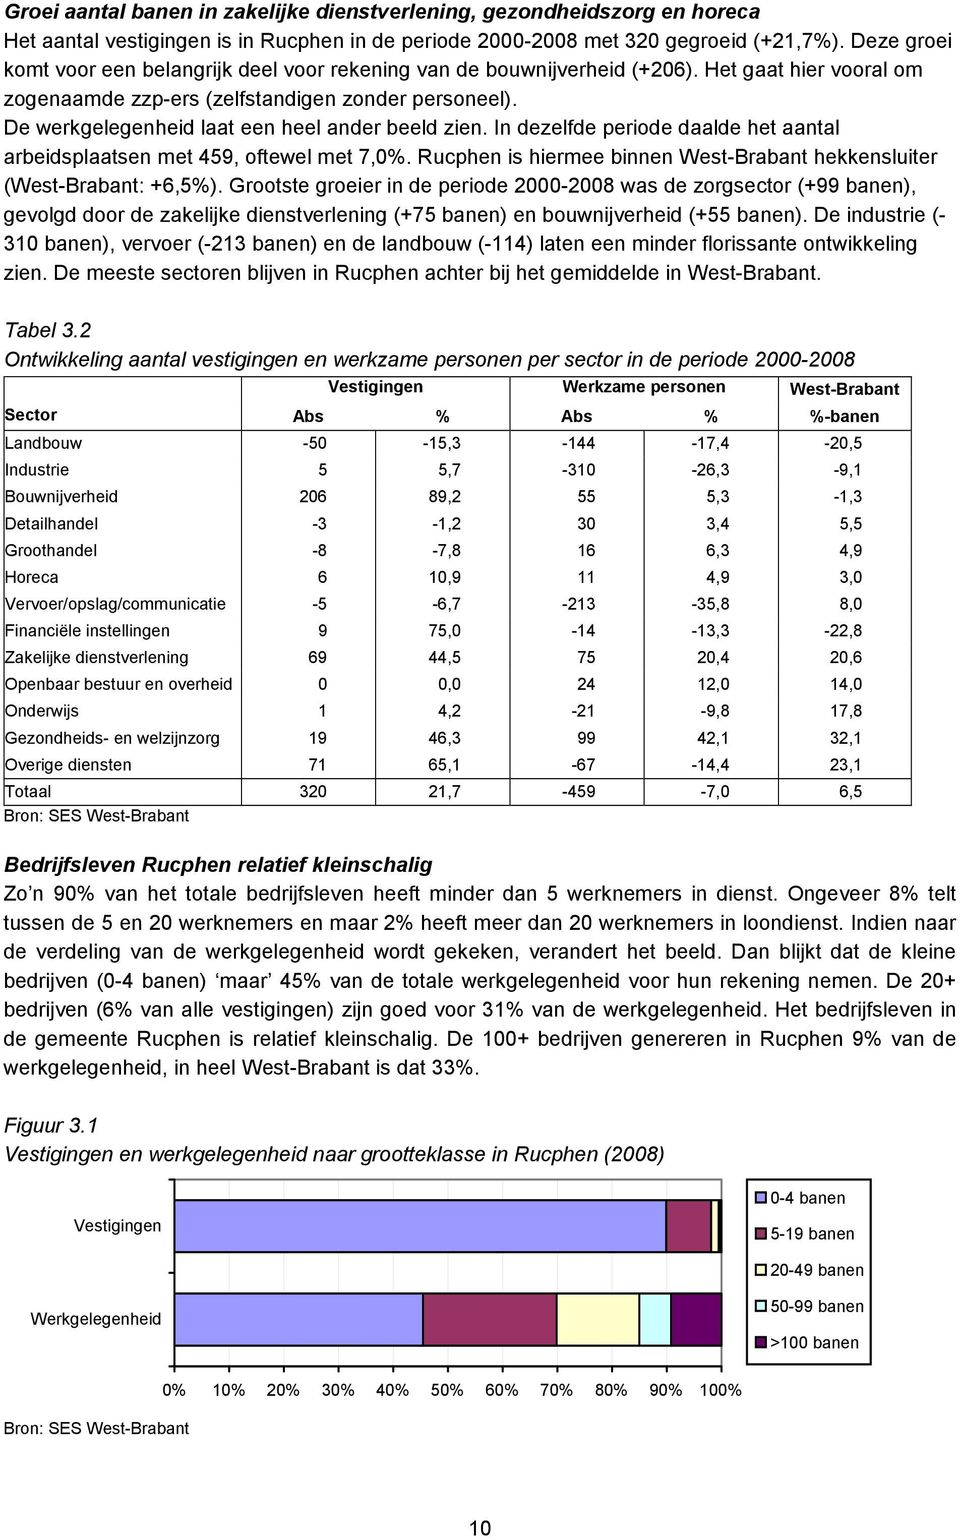 De werkgelegenheid laat een heel ander beeld zien. In dezelfde periode daalde het aantal arbeidsplaatsen met 459, oftewel met 7,0%. is hiermee binnen West-Brabant hekkensluiter (West-Brabant: +6,5%).